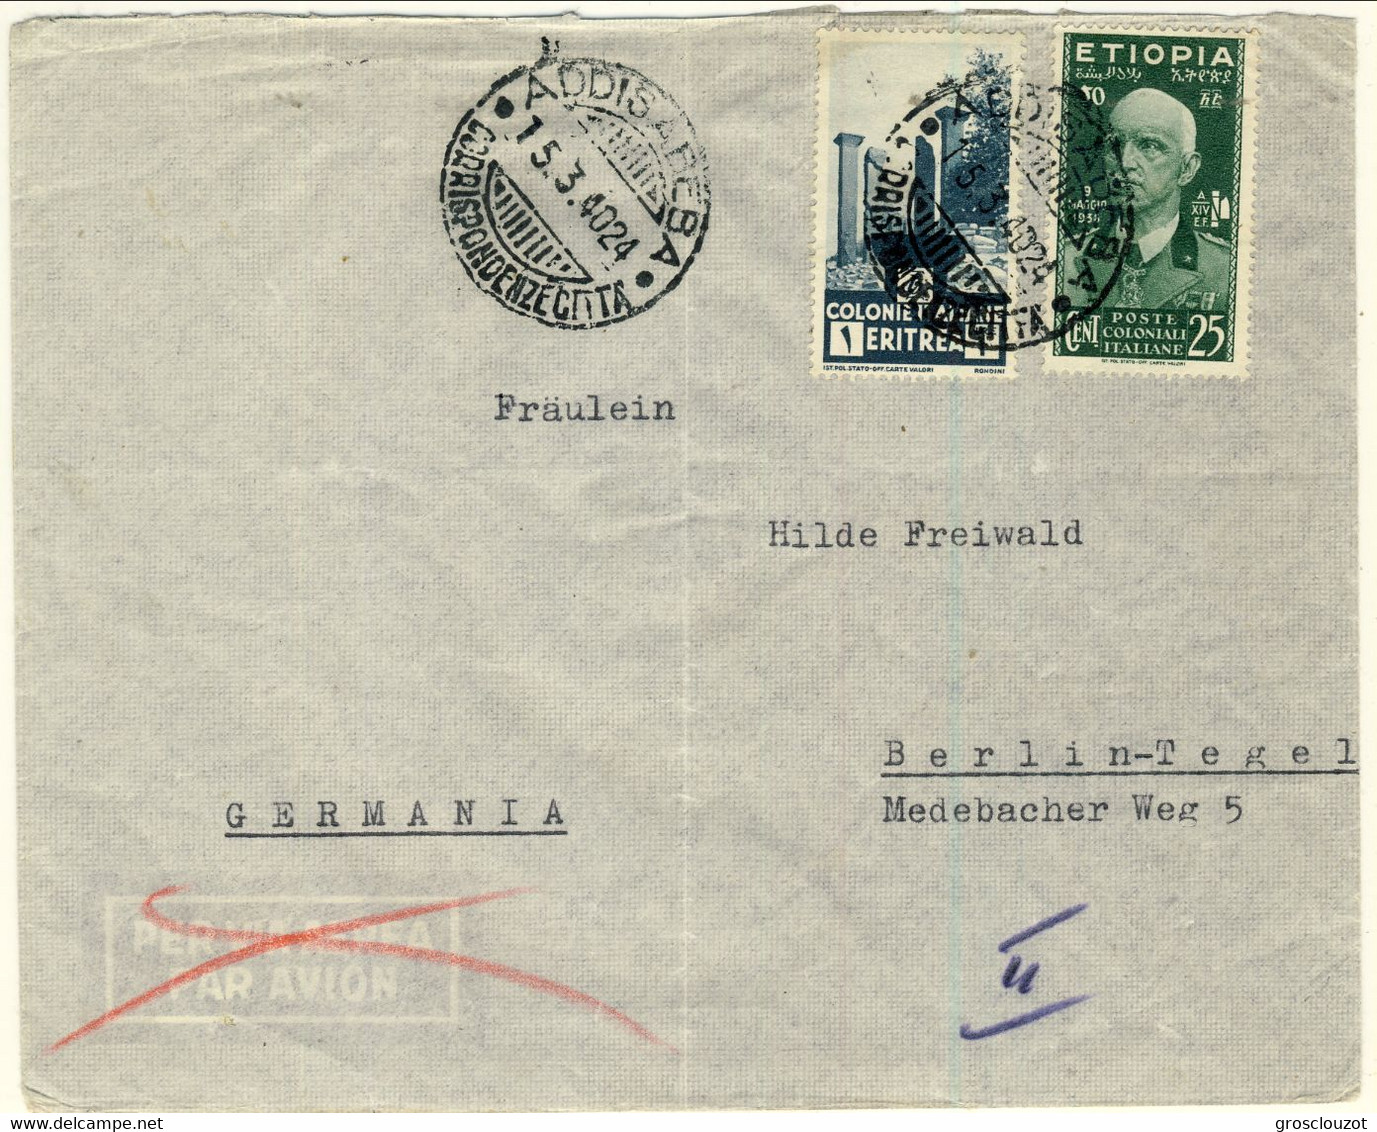 Etiopia 1940 Lettera Privata Addis Abeba-Germania Affrancata Con Il C. 25 Verde N. 3 E Eritrea L. 1 N. 209 - Ethiopia